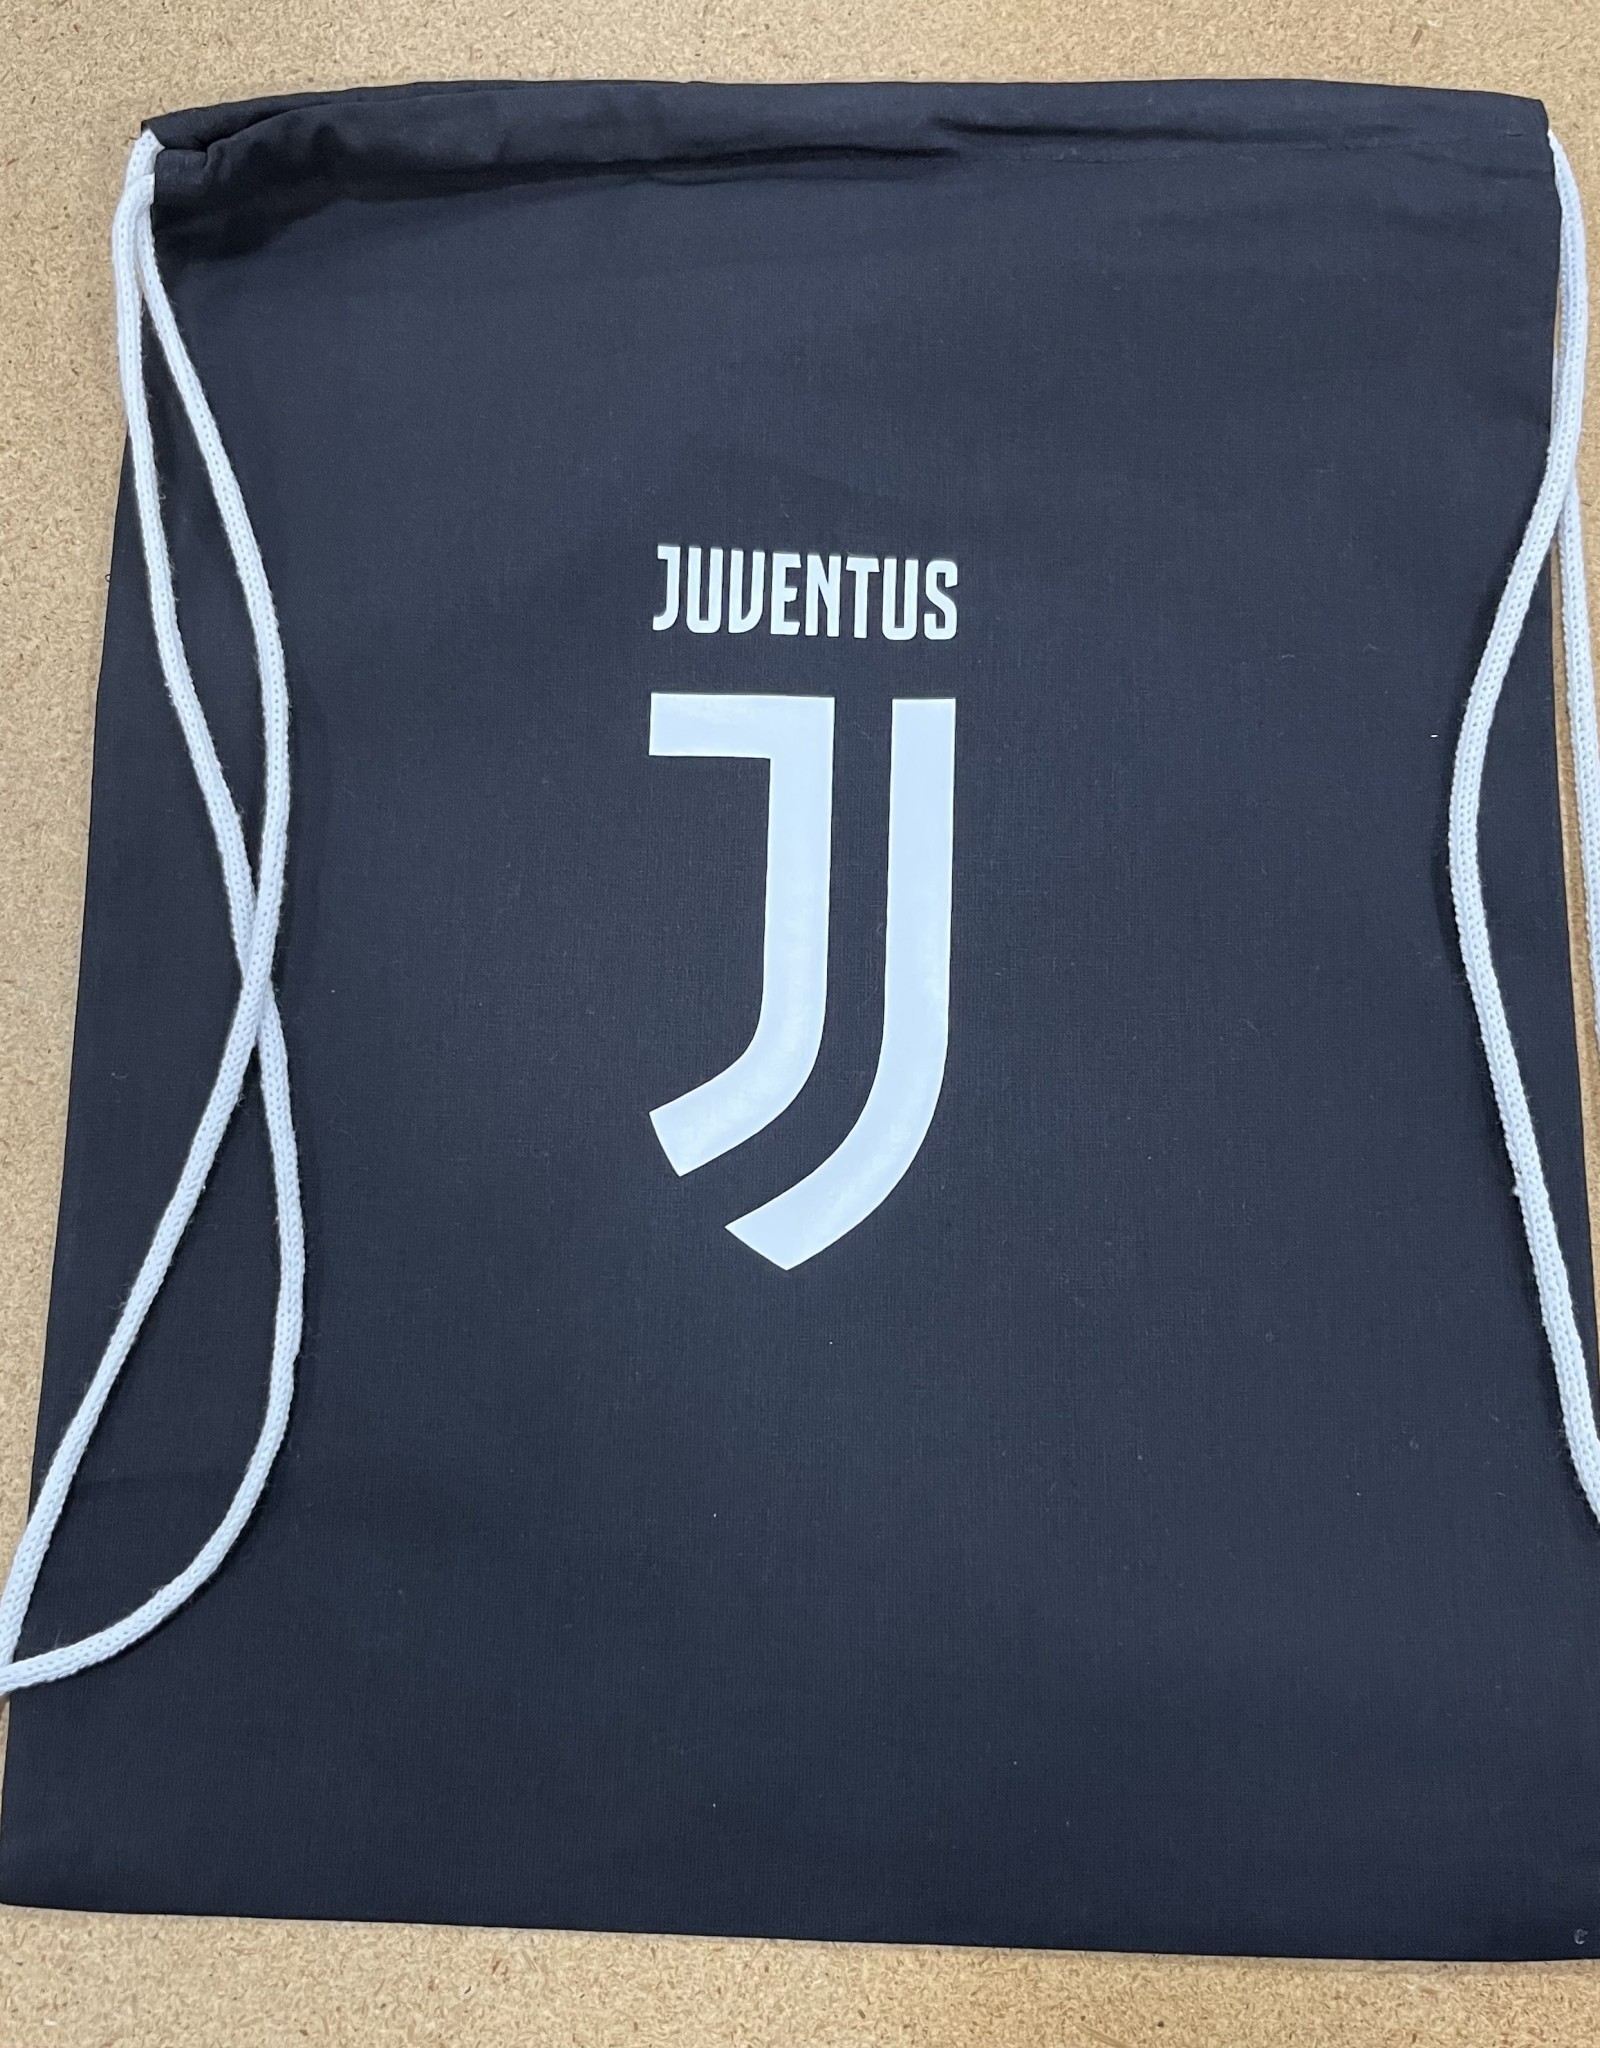 Juventus Cotton Drawstring Bag